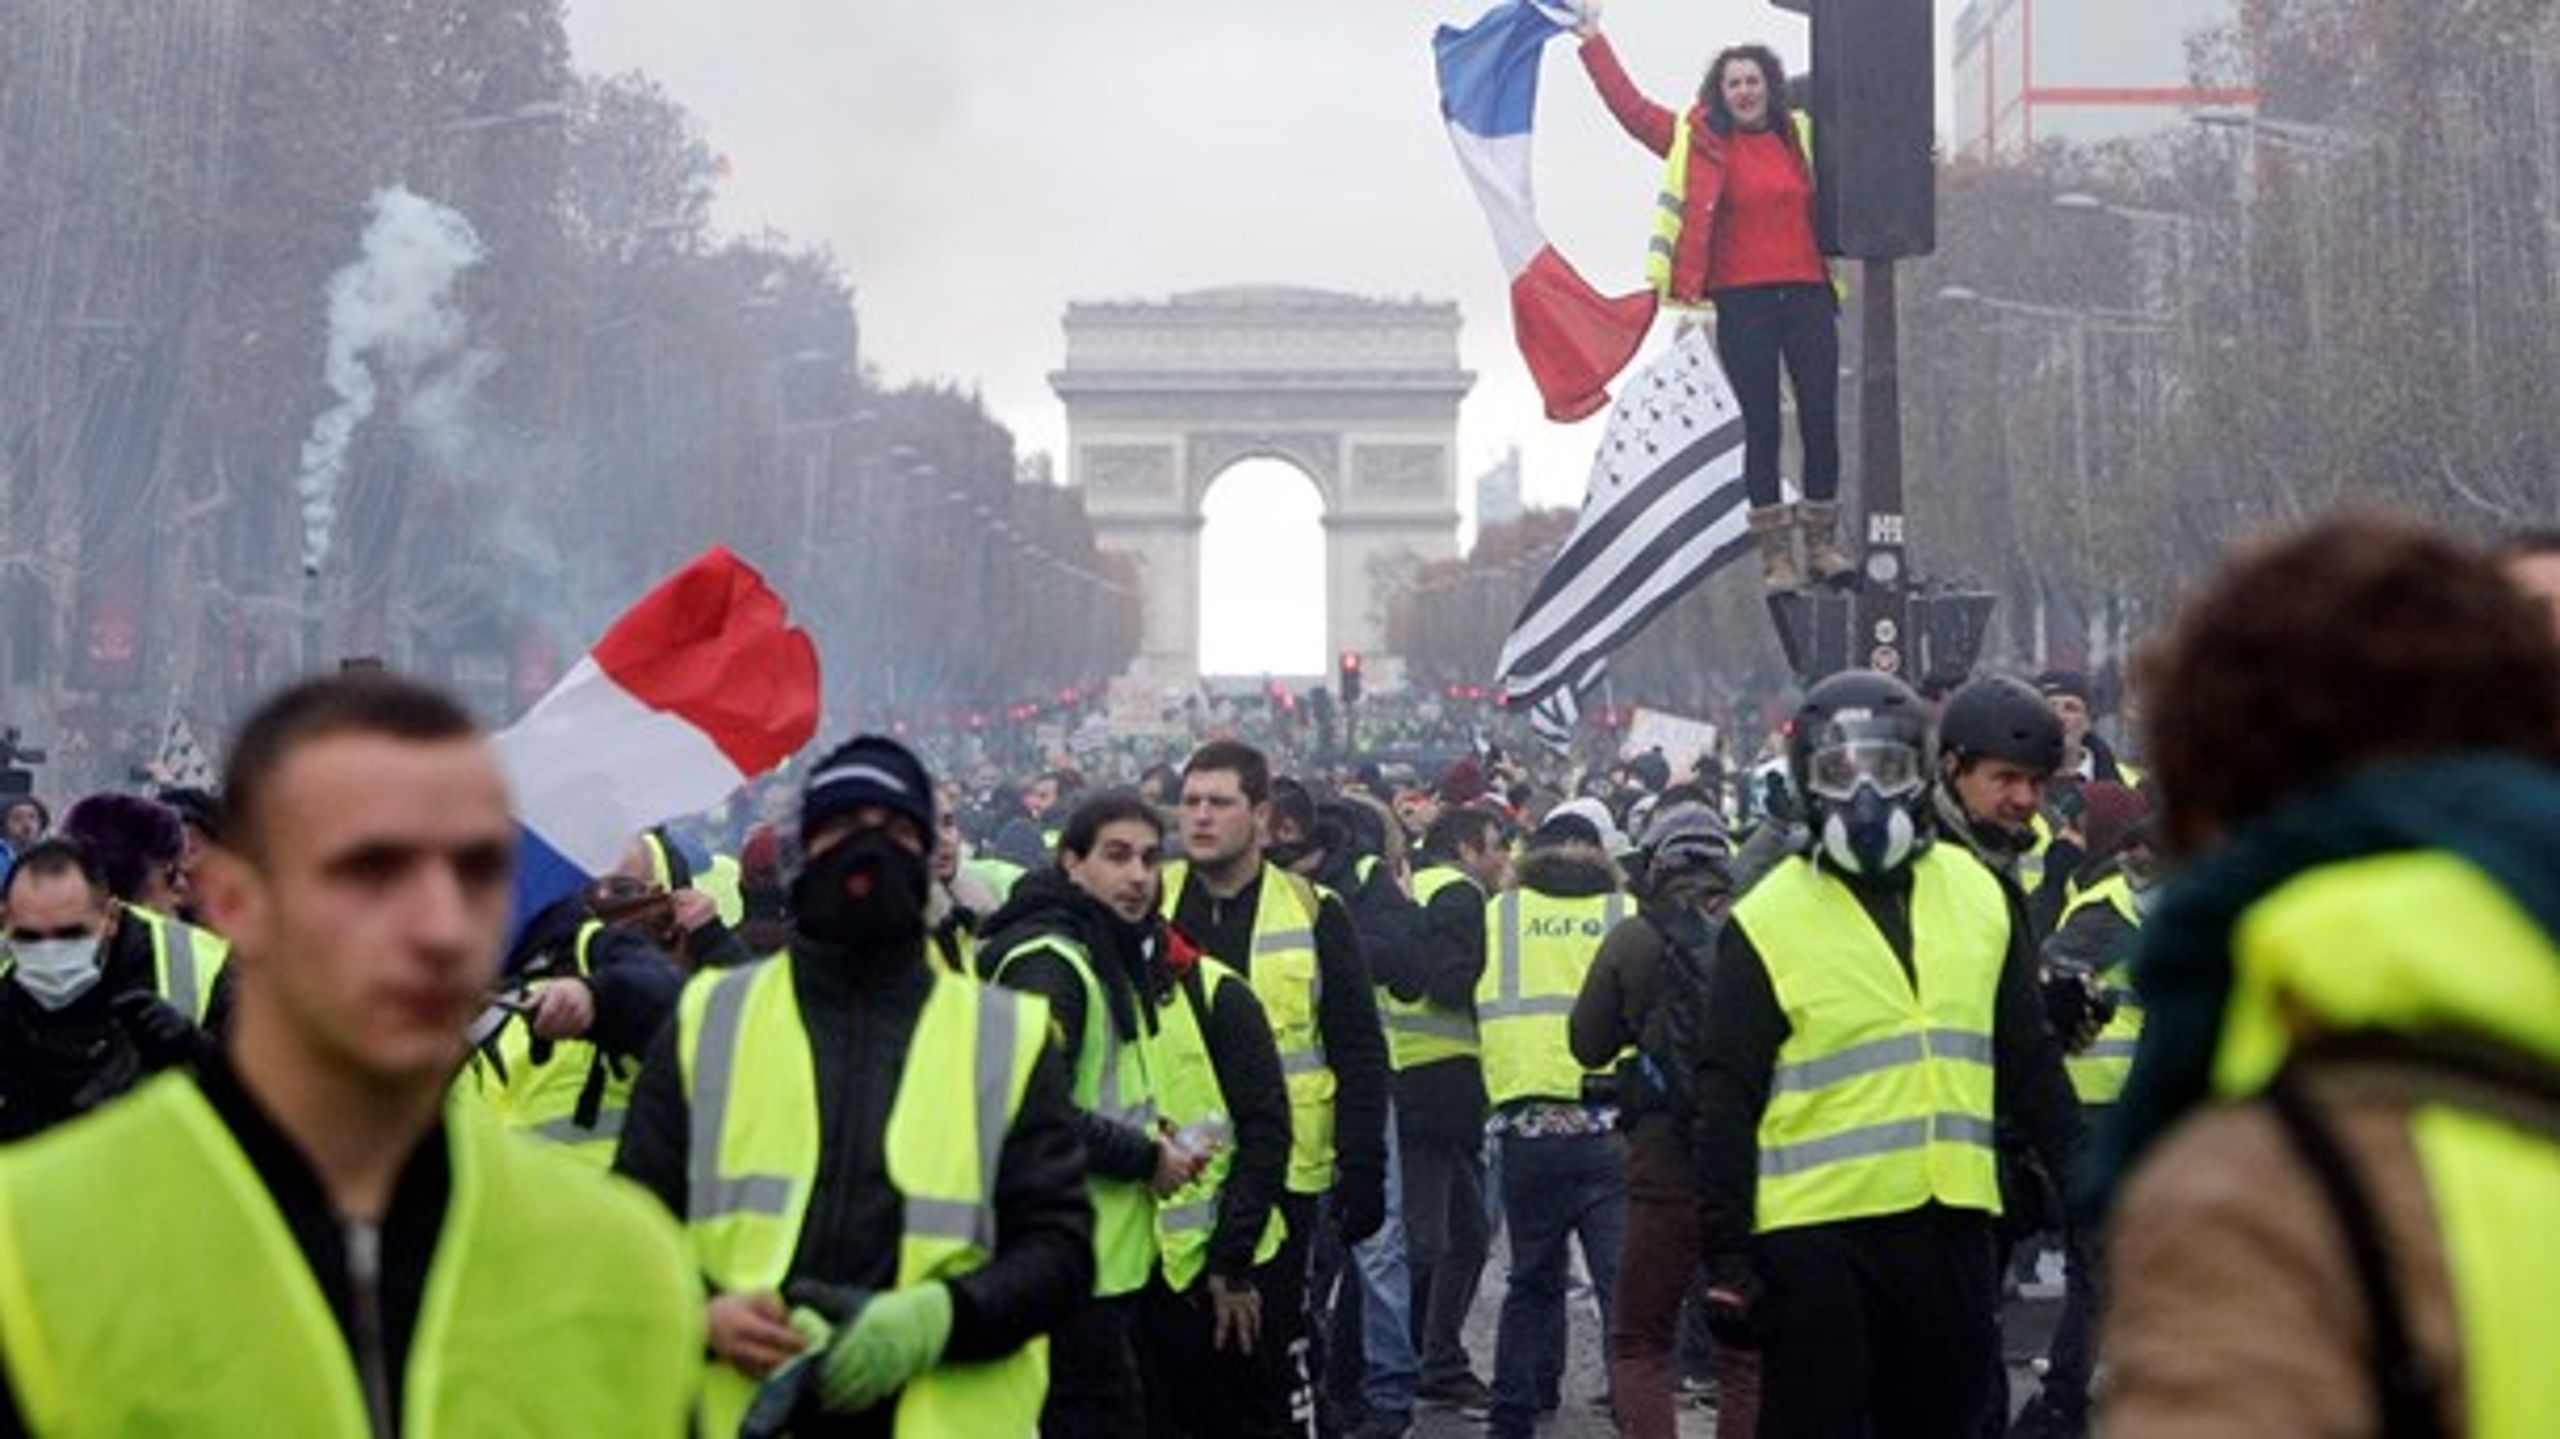 Franskmænd demonstrerer mod Macrons bebudede afgiftsstigning på benzin som et led i kampen mod klimaforandringer.&nbsp;